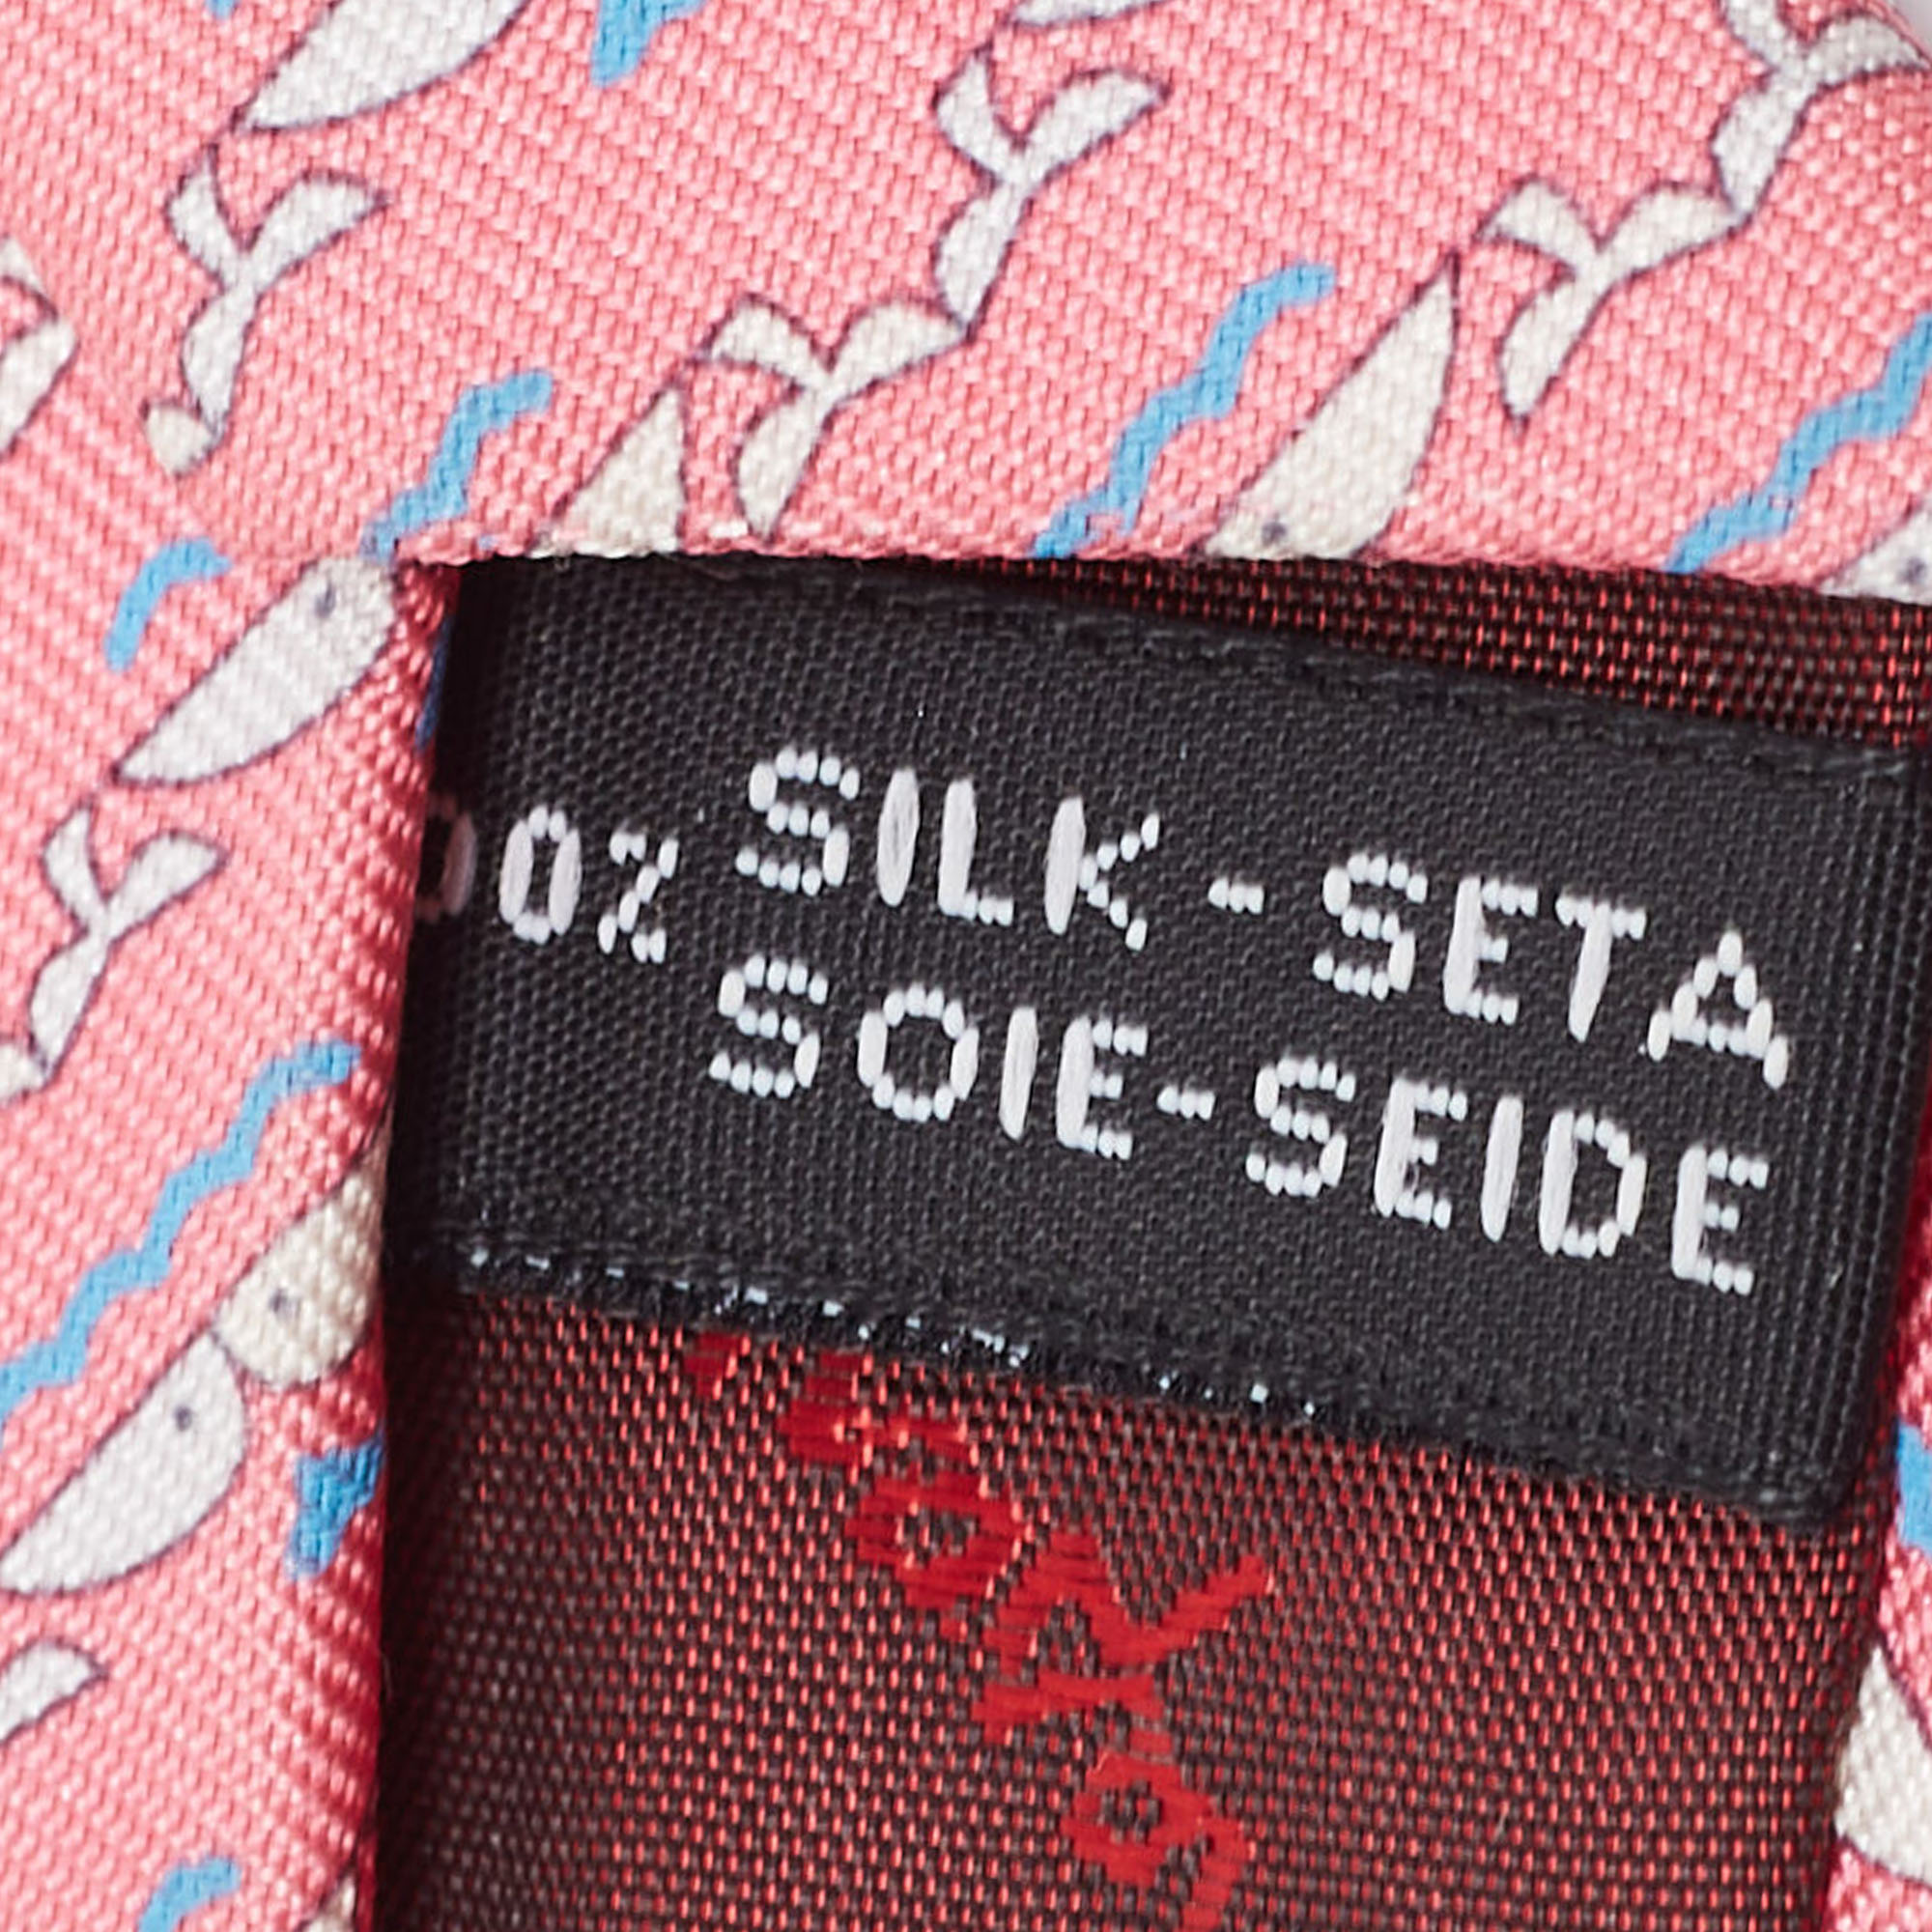 Salvatore Ferragamo Pink Dolphin Print Silk Tie